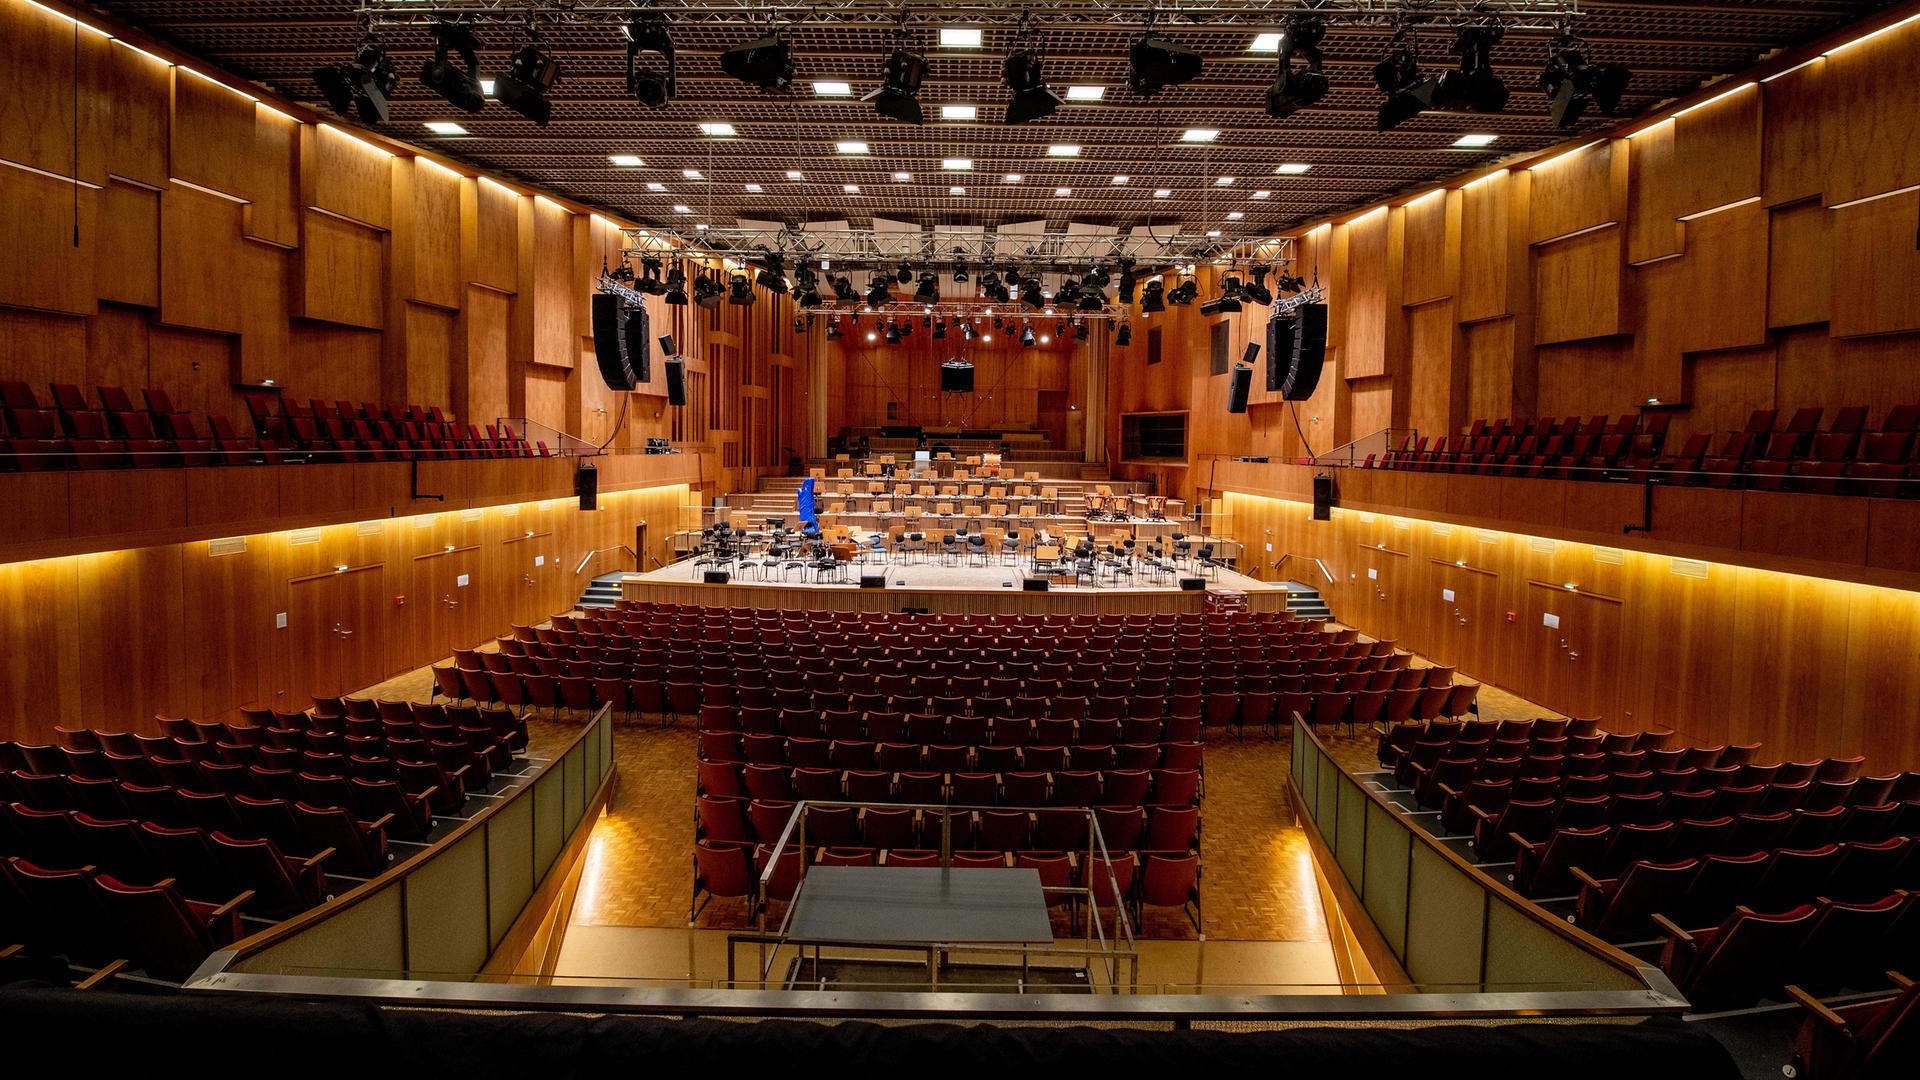 Ein Konzertsaal mit holzvertäfelten Wänden, in dem rote Stühle zu sehen sind sowie eine Bühne, die für ein Orchester ausgestattet ist. Von der Decke hängen Scheinwerfer und Lautsprecherboxen.